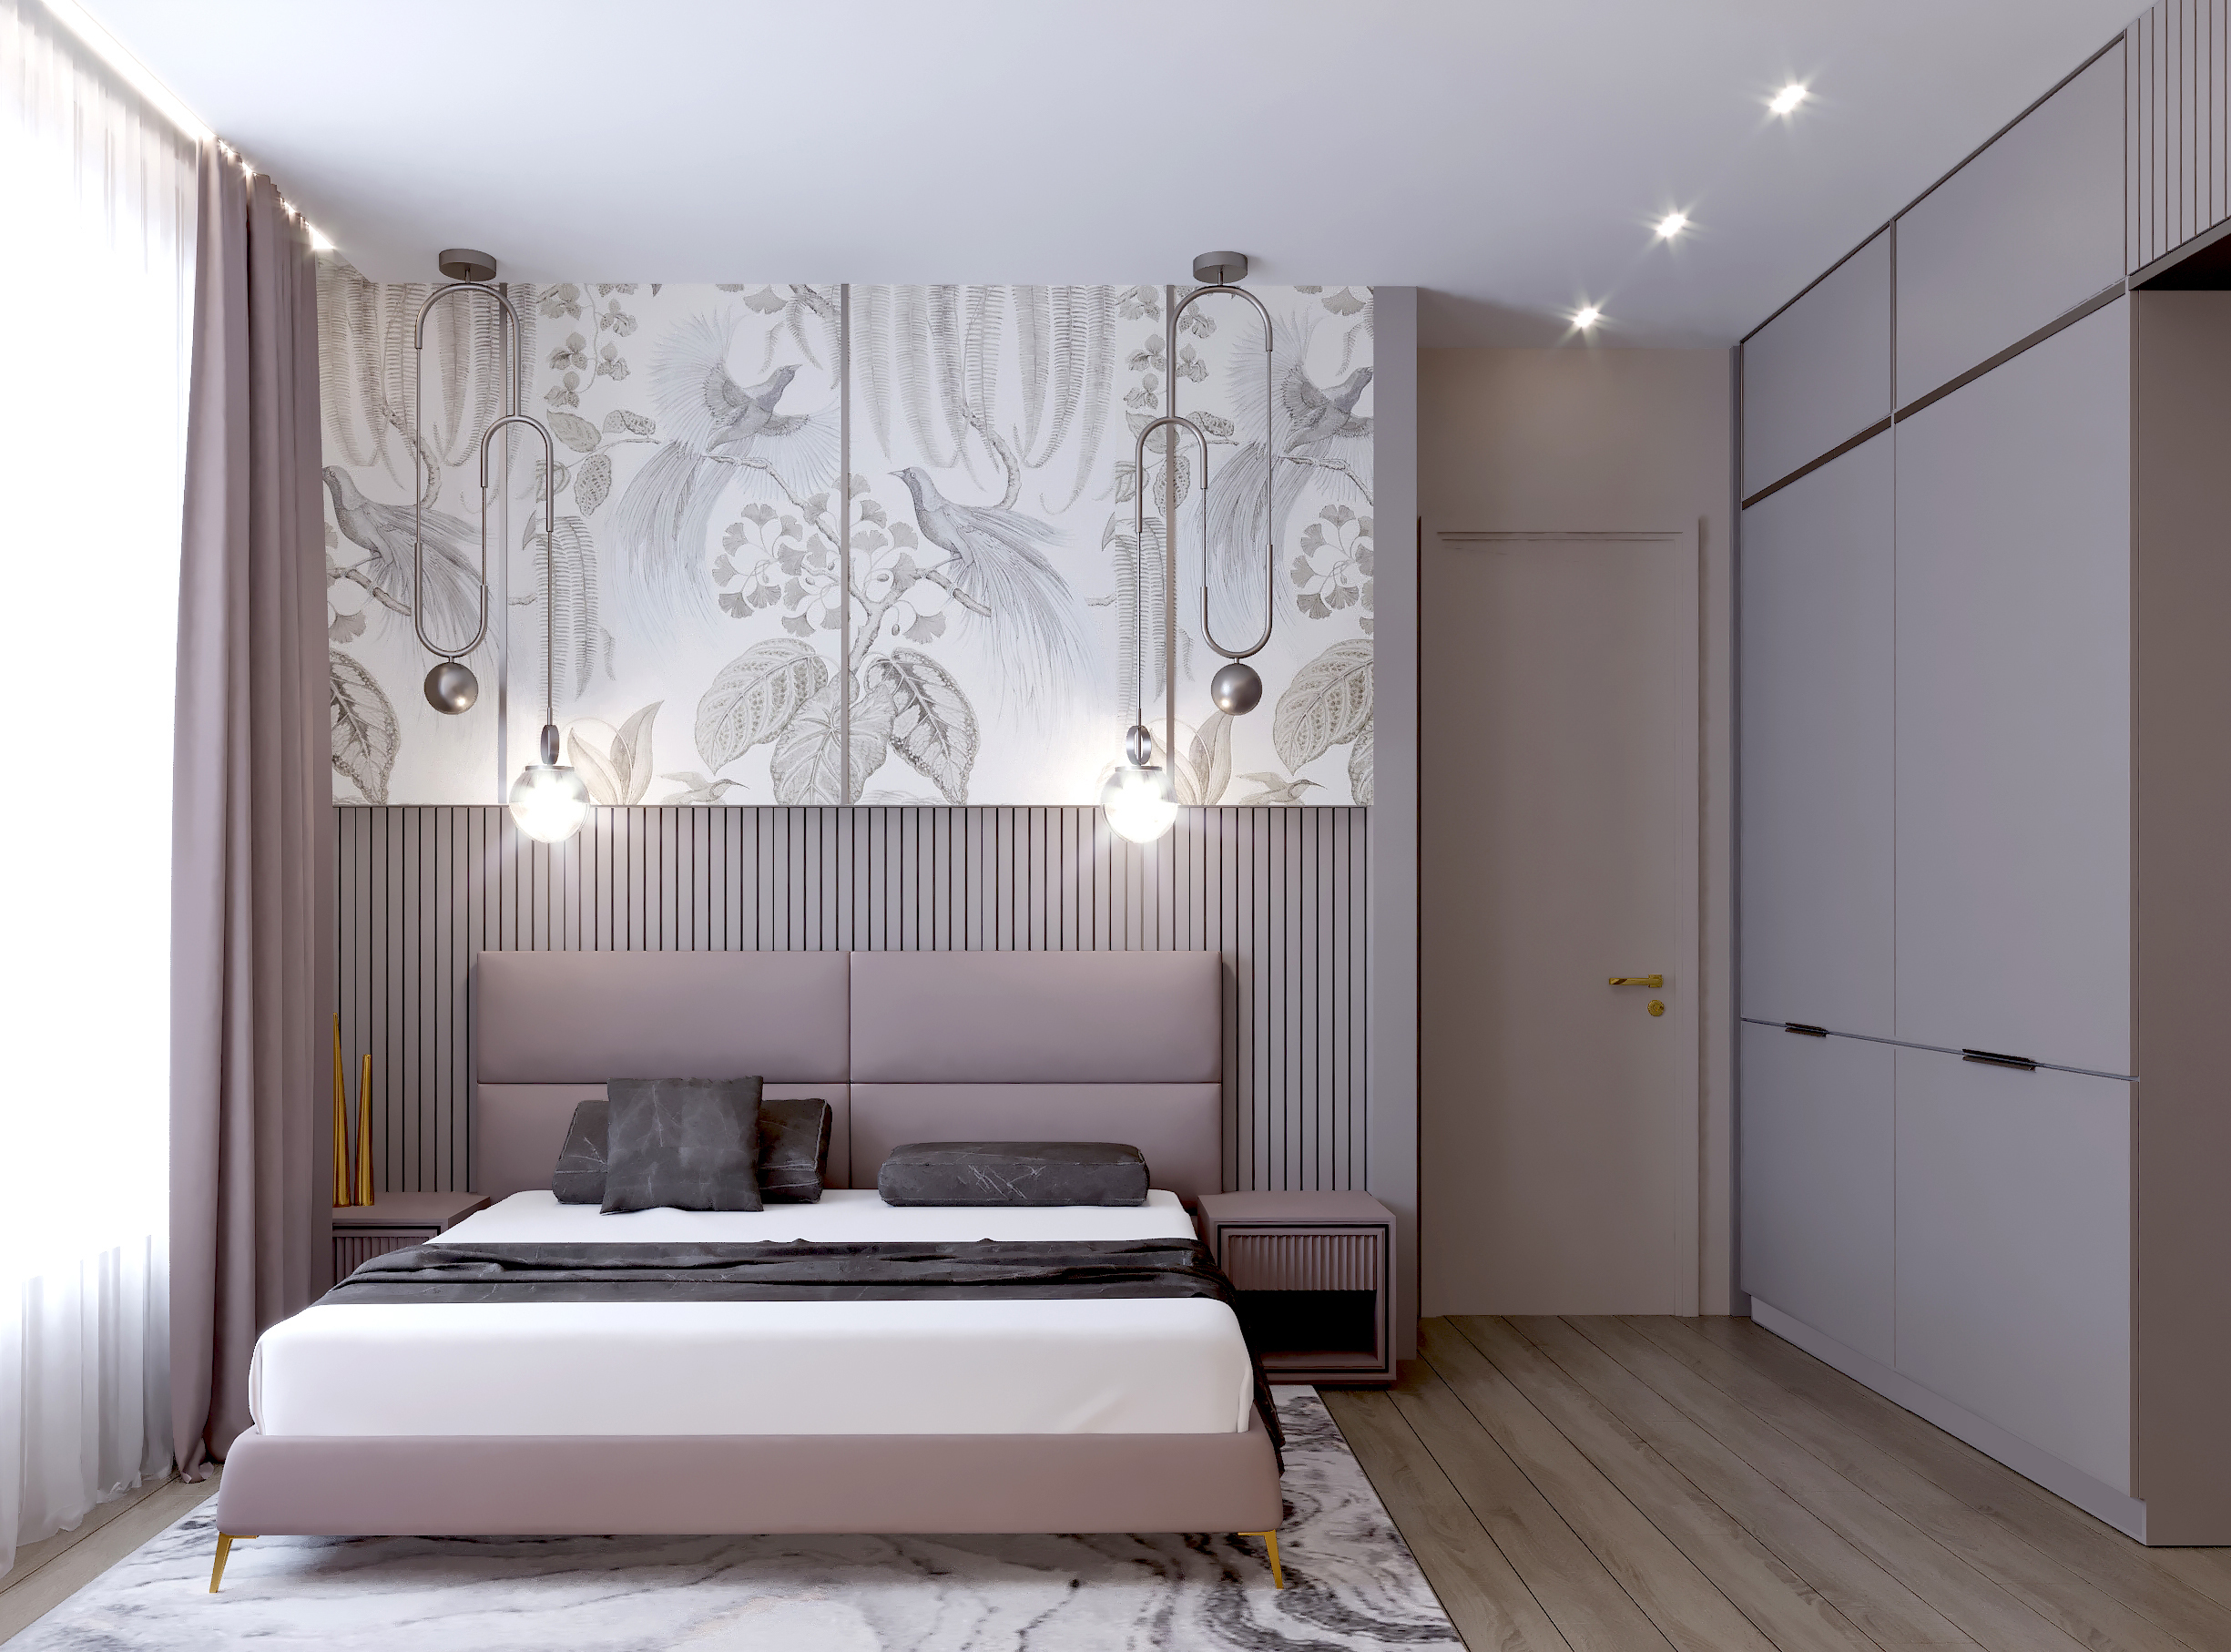 Интерьер спальни cветовыми линиями, подсветкой настенной и светильниками над кроватью